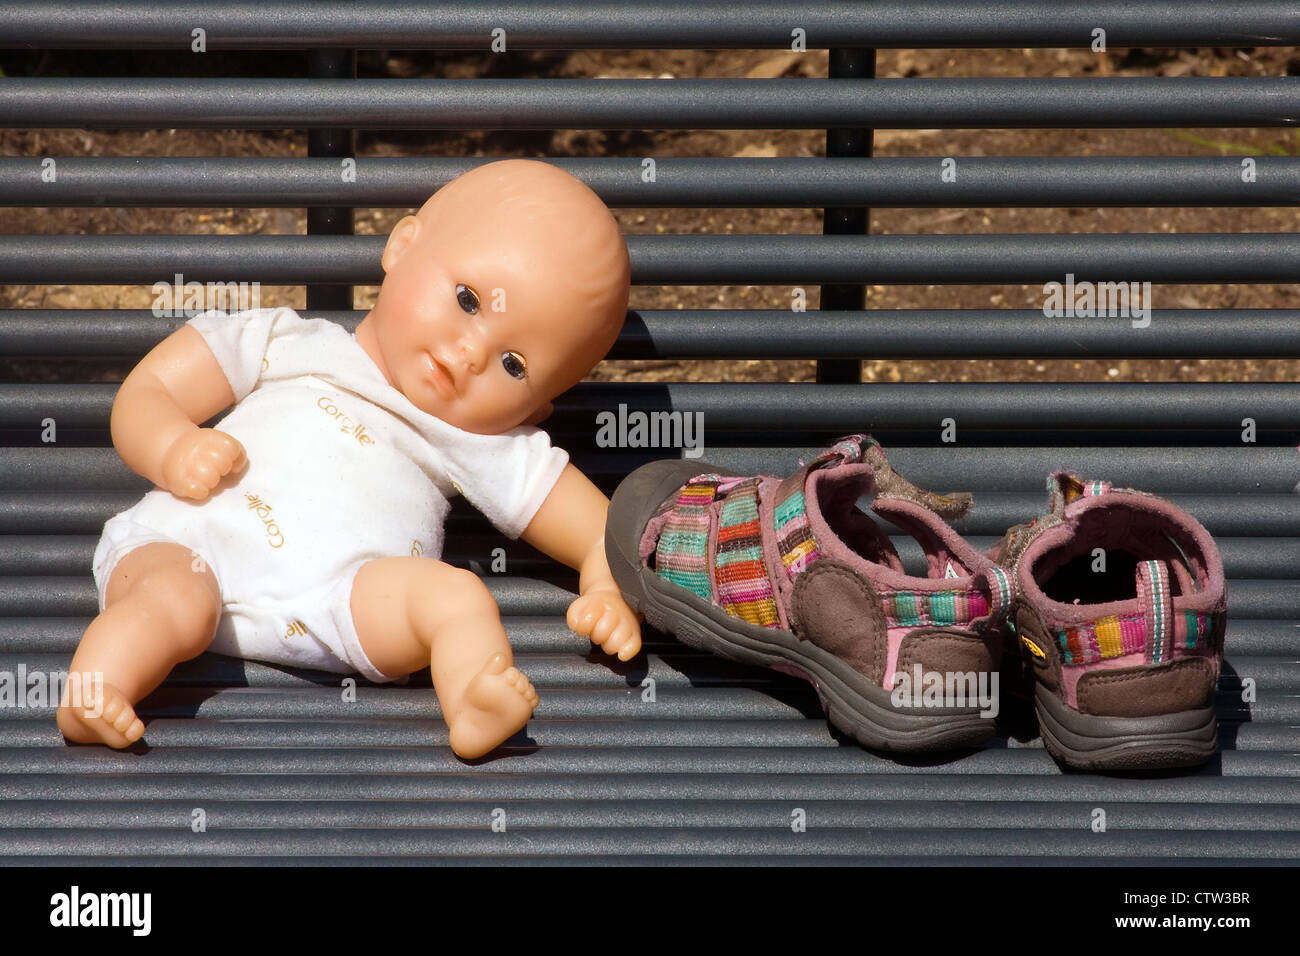 Une poupée en plastique qui est assis à côté de chaussures de bébé sur un banc métallique à Georgetown Waterfront Park, Washington, DC Banque D'Images